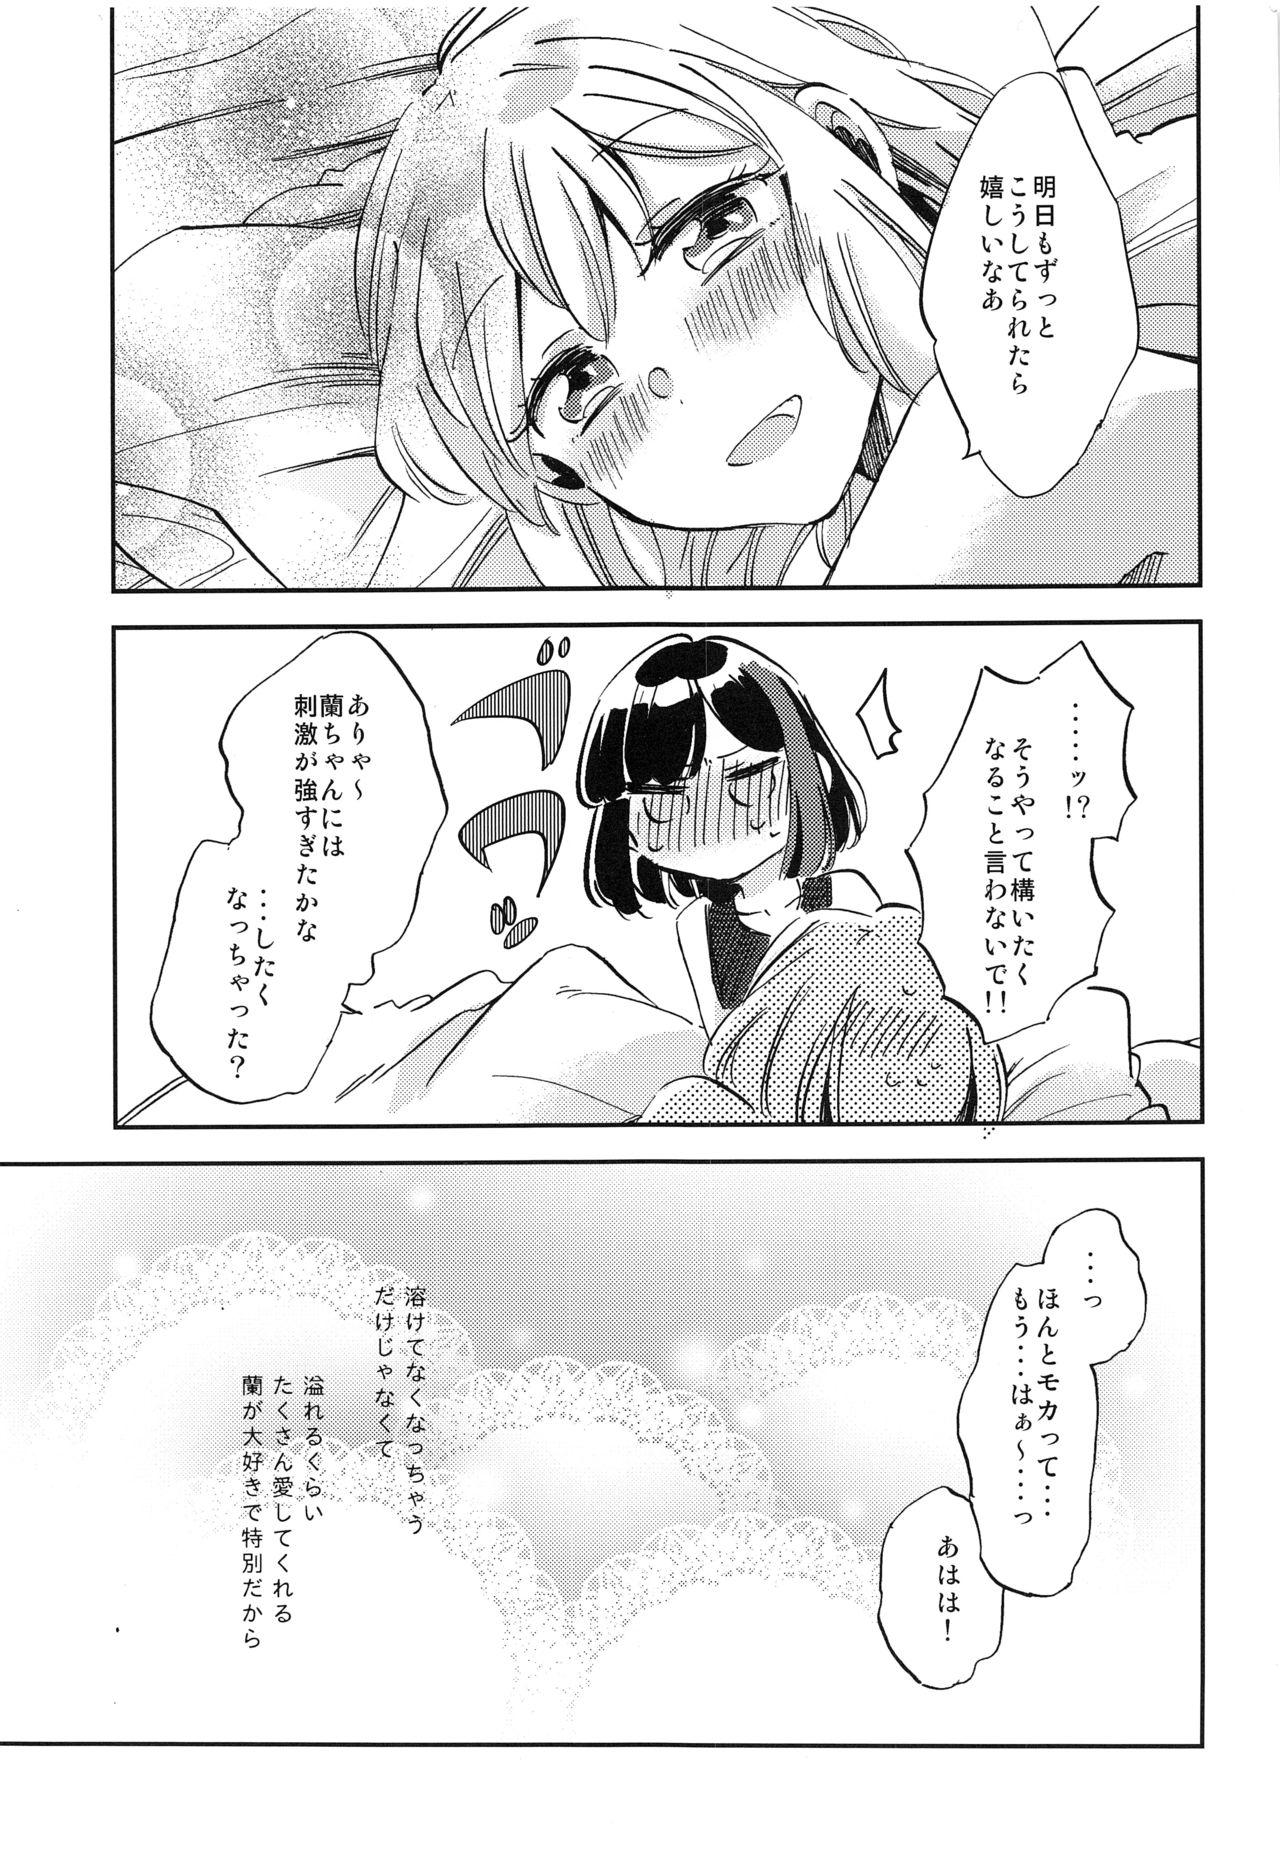 Chica Futari de Iru kara Dekiru Koto - Bang dream Stepbrother - Page 34